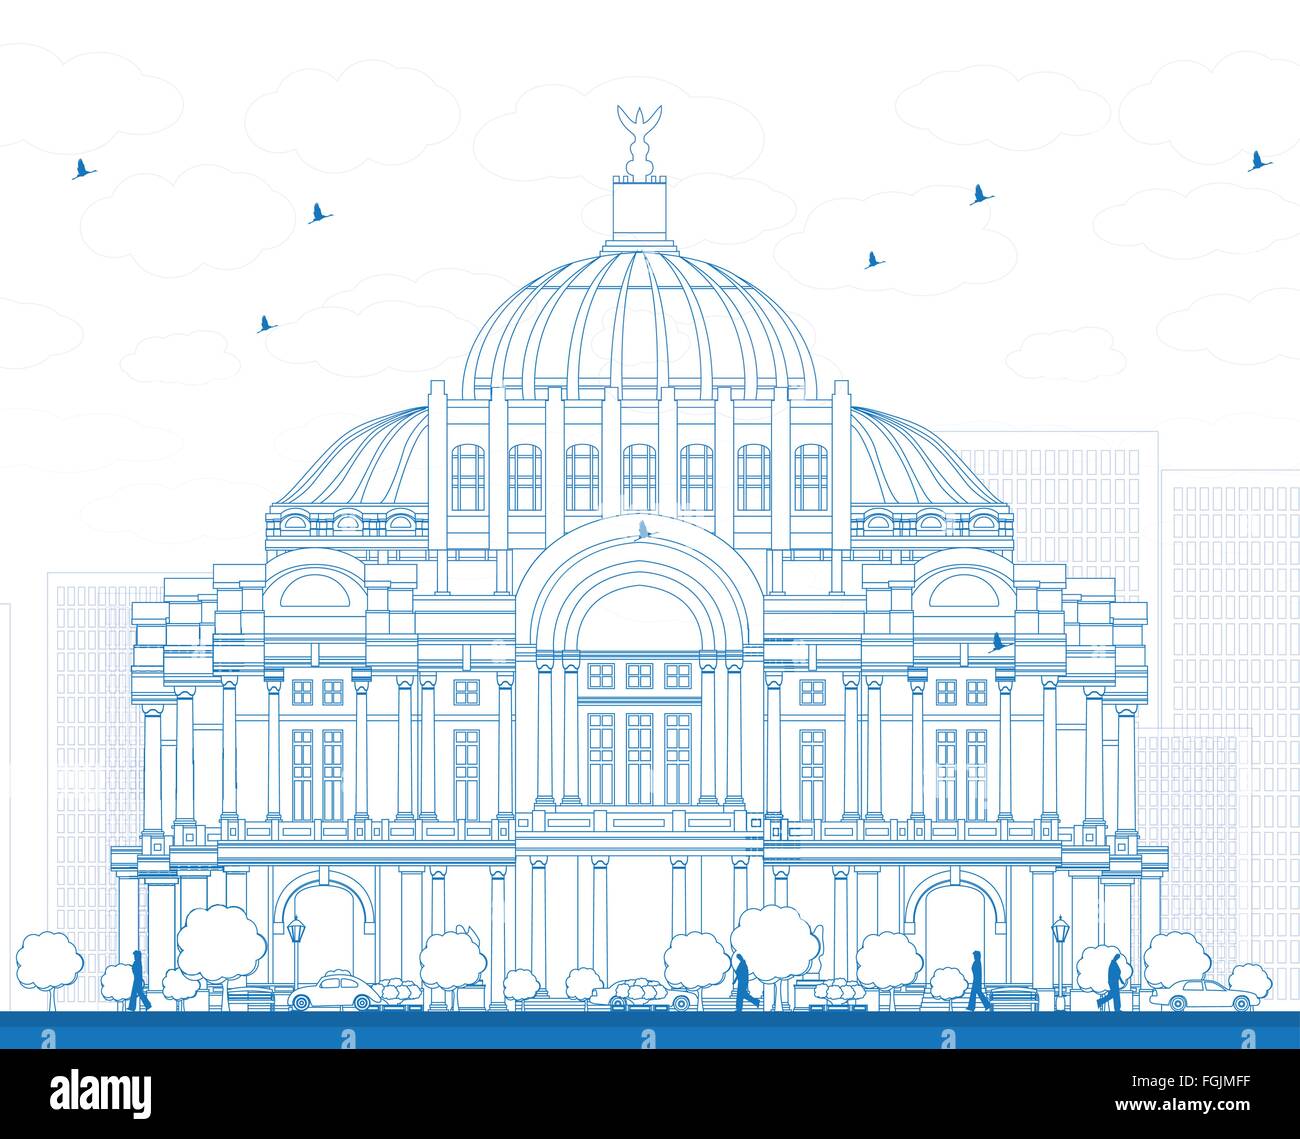 Gliederung der Palast der schönen Künste/Palacio de Bellas Artes in Mexico City, Mexiko. Vektor-Illustration. Stock Vektor